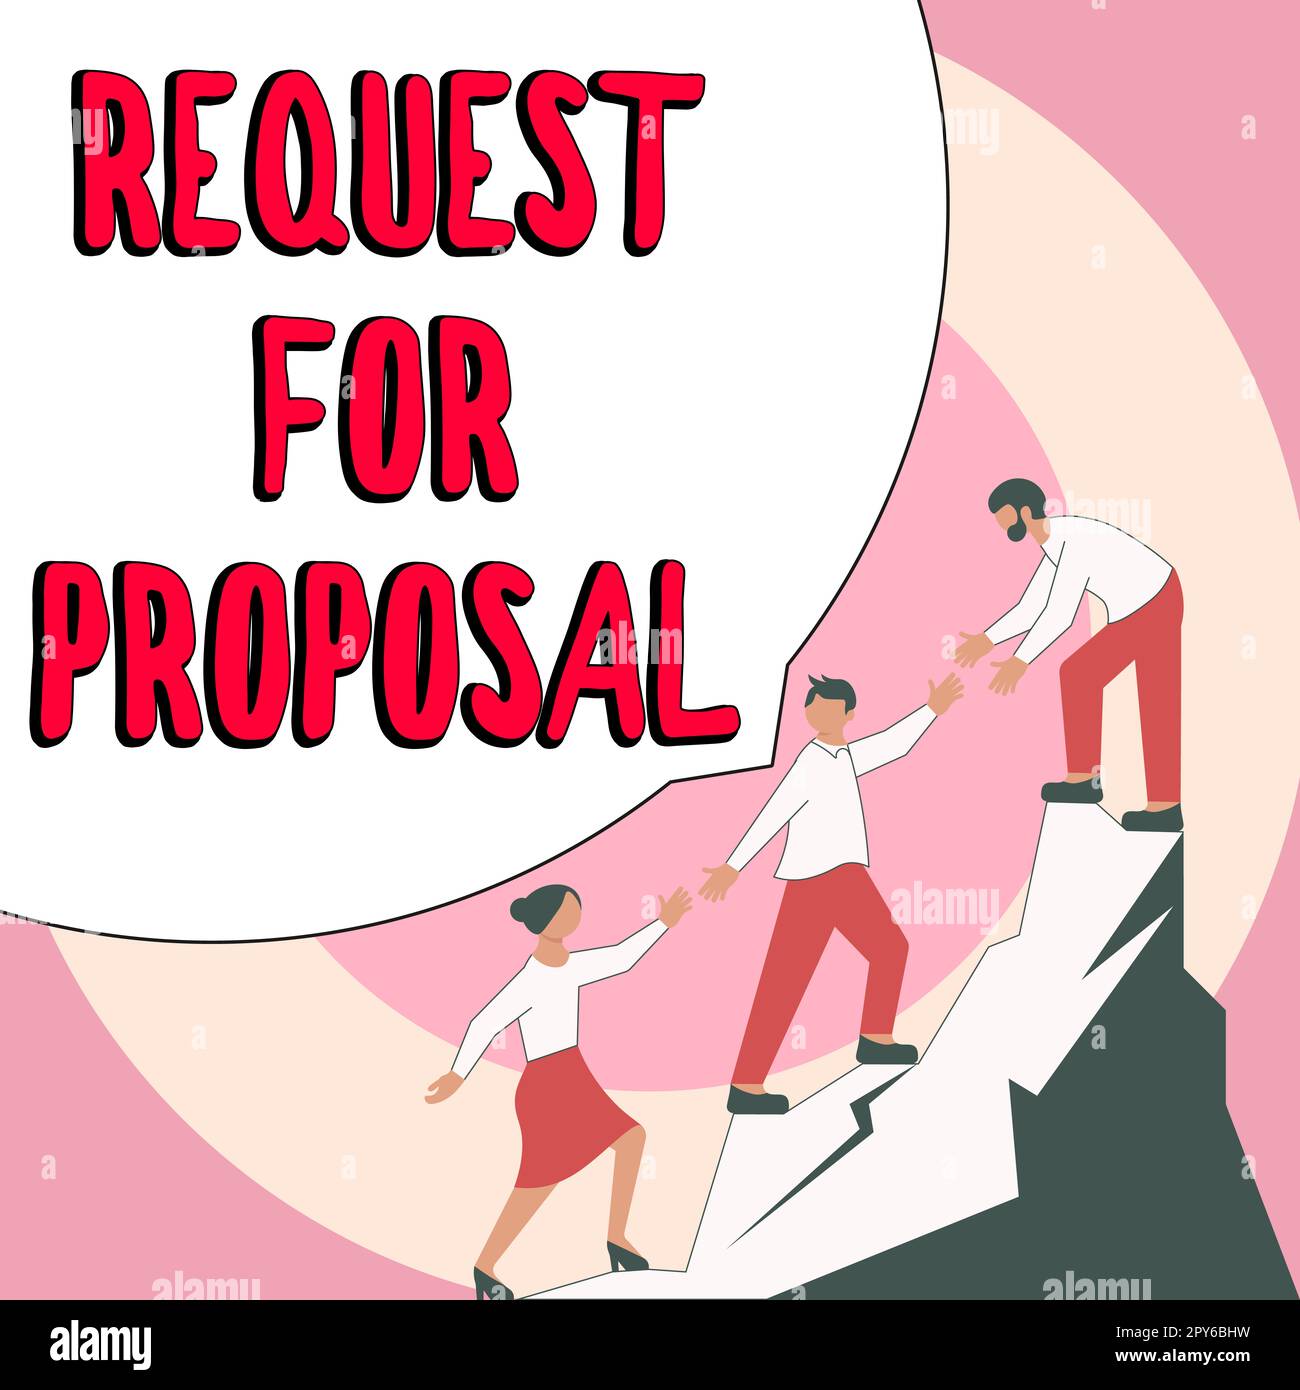 Handschriftlicher Text „Request for Proposal“ (Angebotsanfrage Das Dokument für das Geschäftskonzept enthält einen Ausschreibungsprozess nach Agentur oder Unternehmen Stockfoto